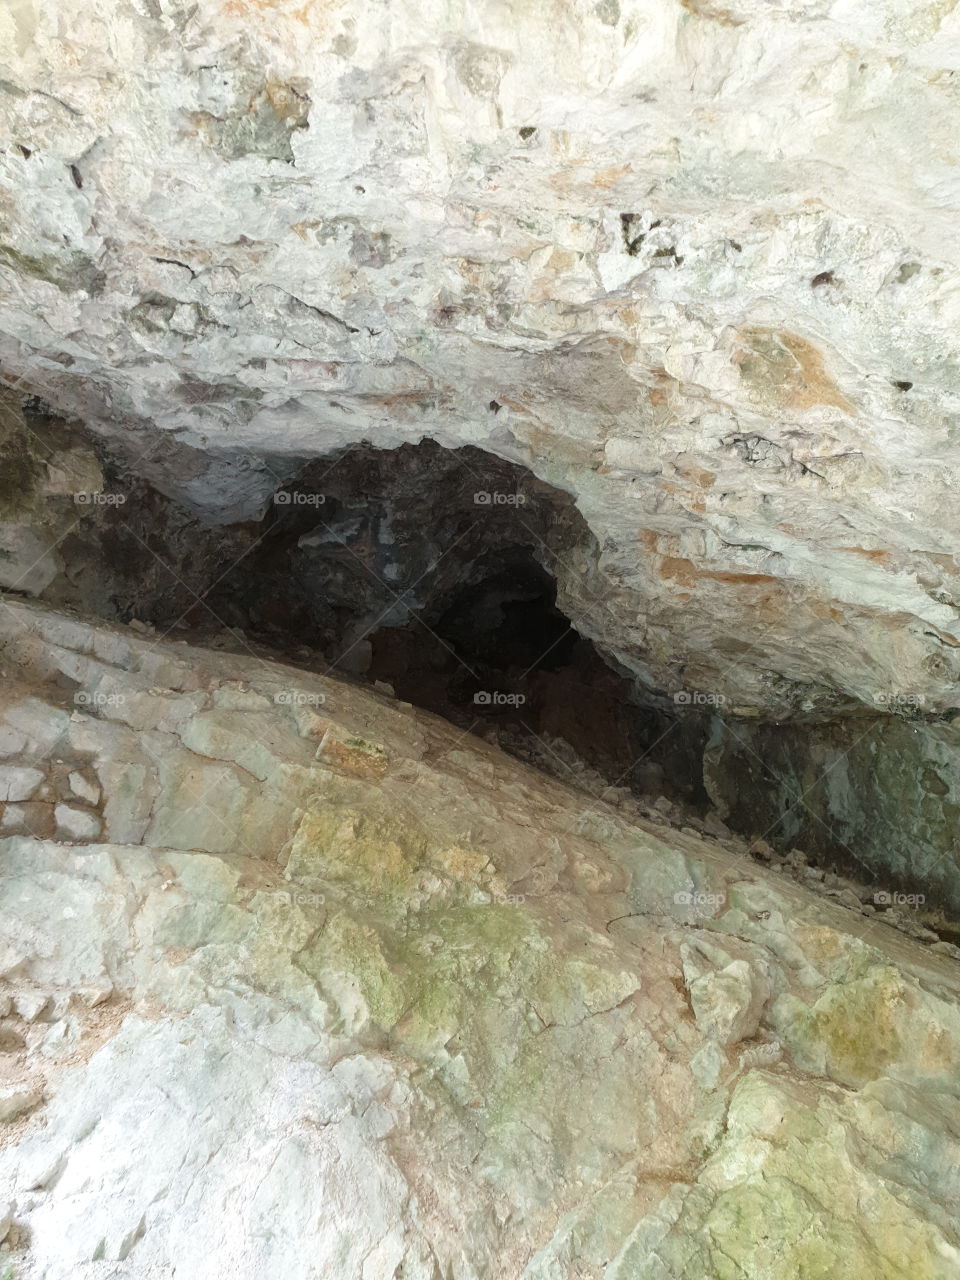 Die Höhle die ich heute gefunden habe.
sehr tiefes Loch im Felsen.